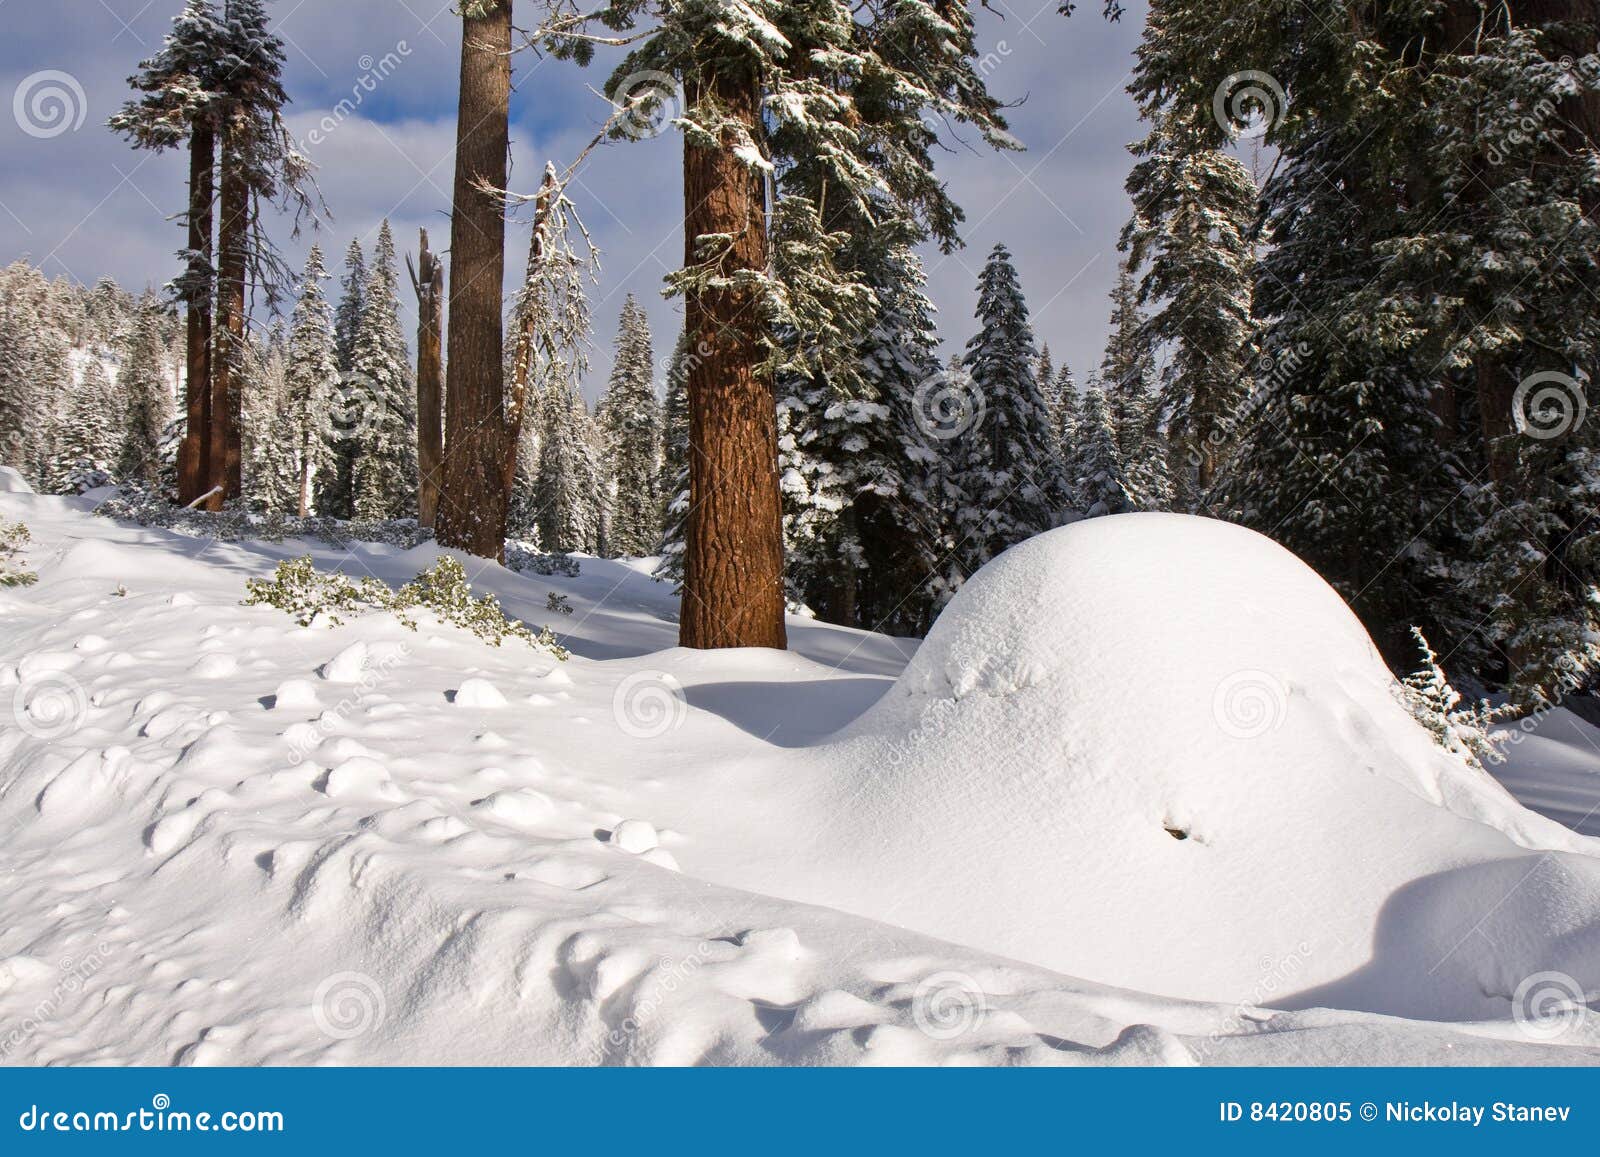 snow mound clipart - photo #15